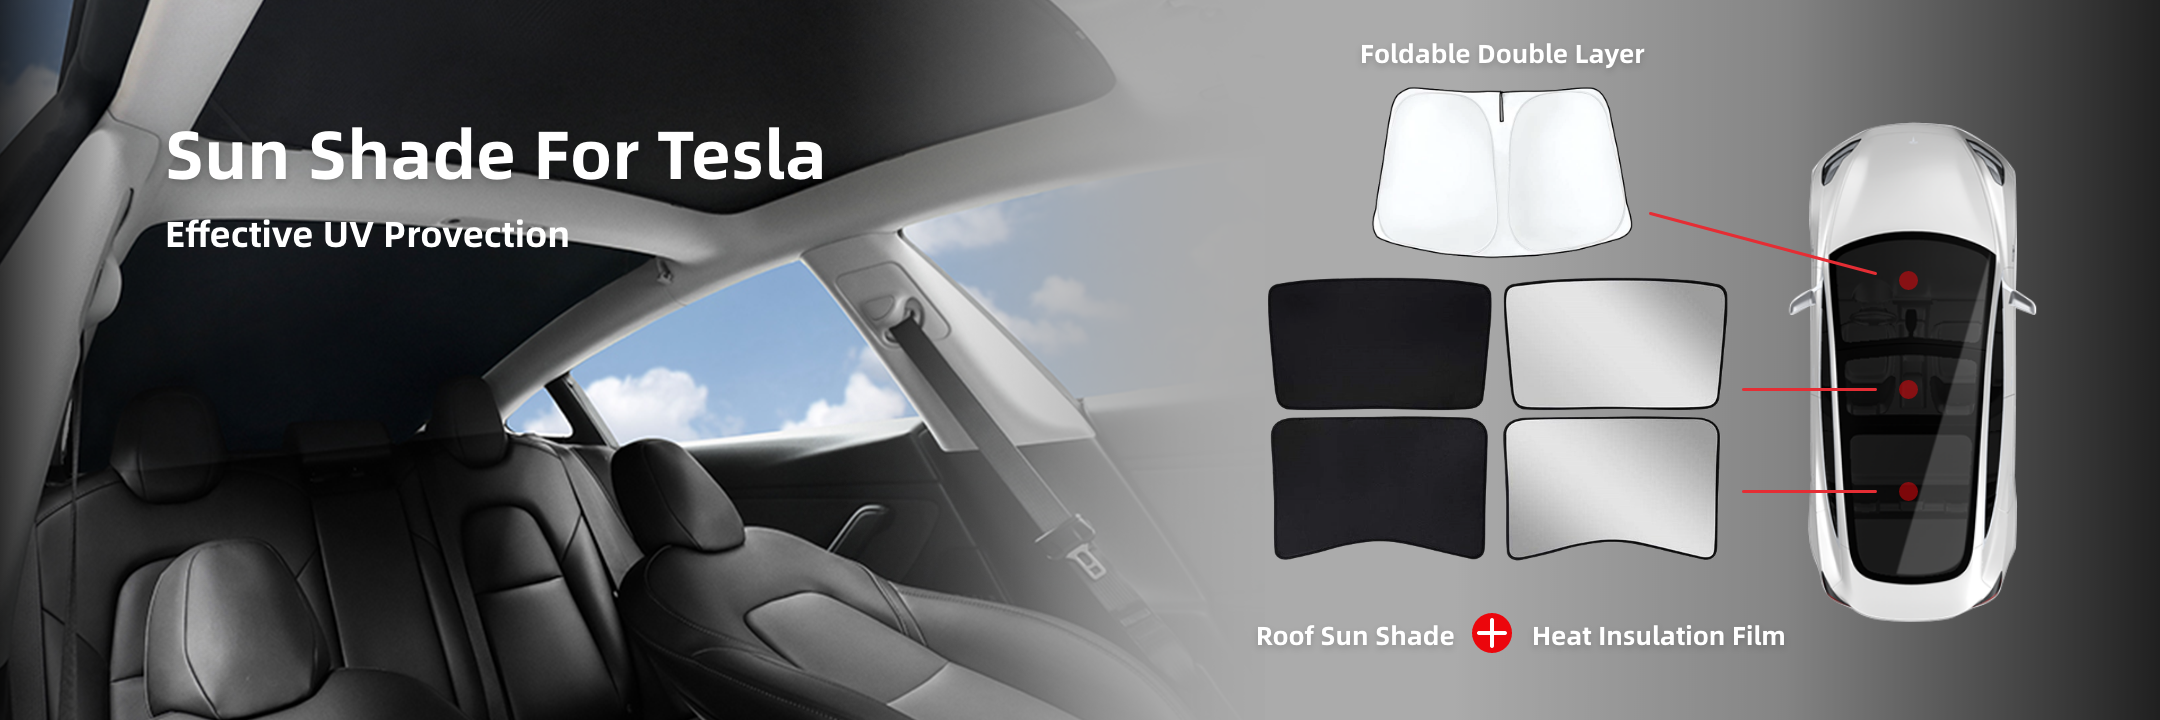 Sun Shade For Tesla 